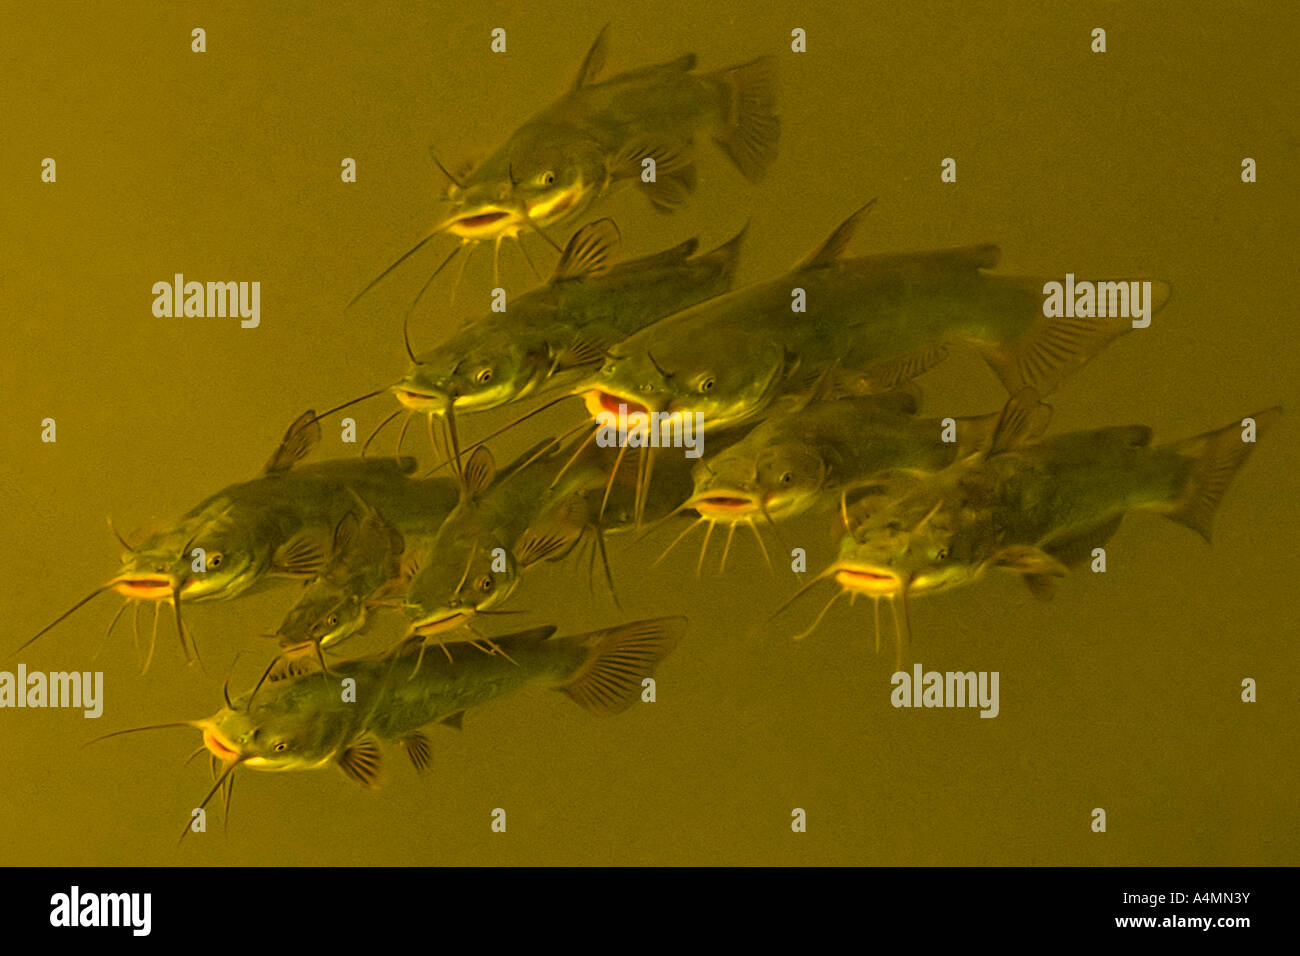 La natation dans l'eau pleine de poisson-chat (Ictalurus melas). La France. Poissons-chats (Ictalurus melas) nageant en pleine eau (France). Banque D'Images